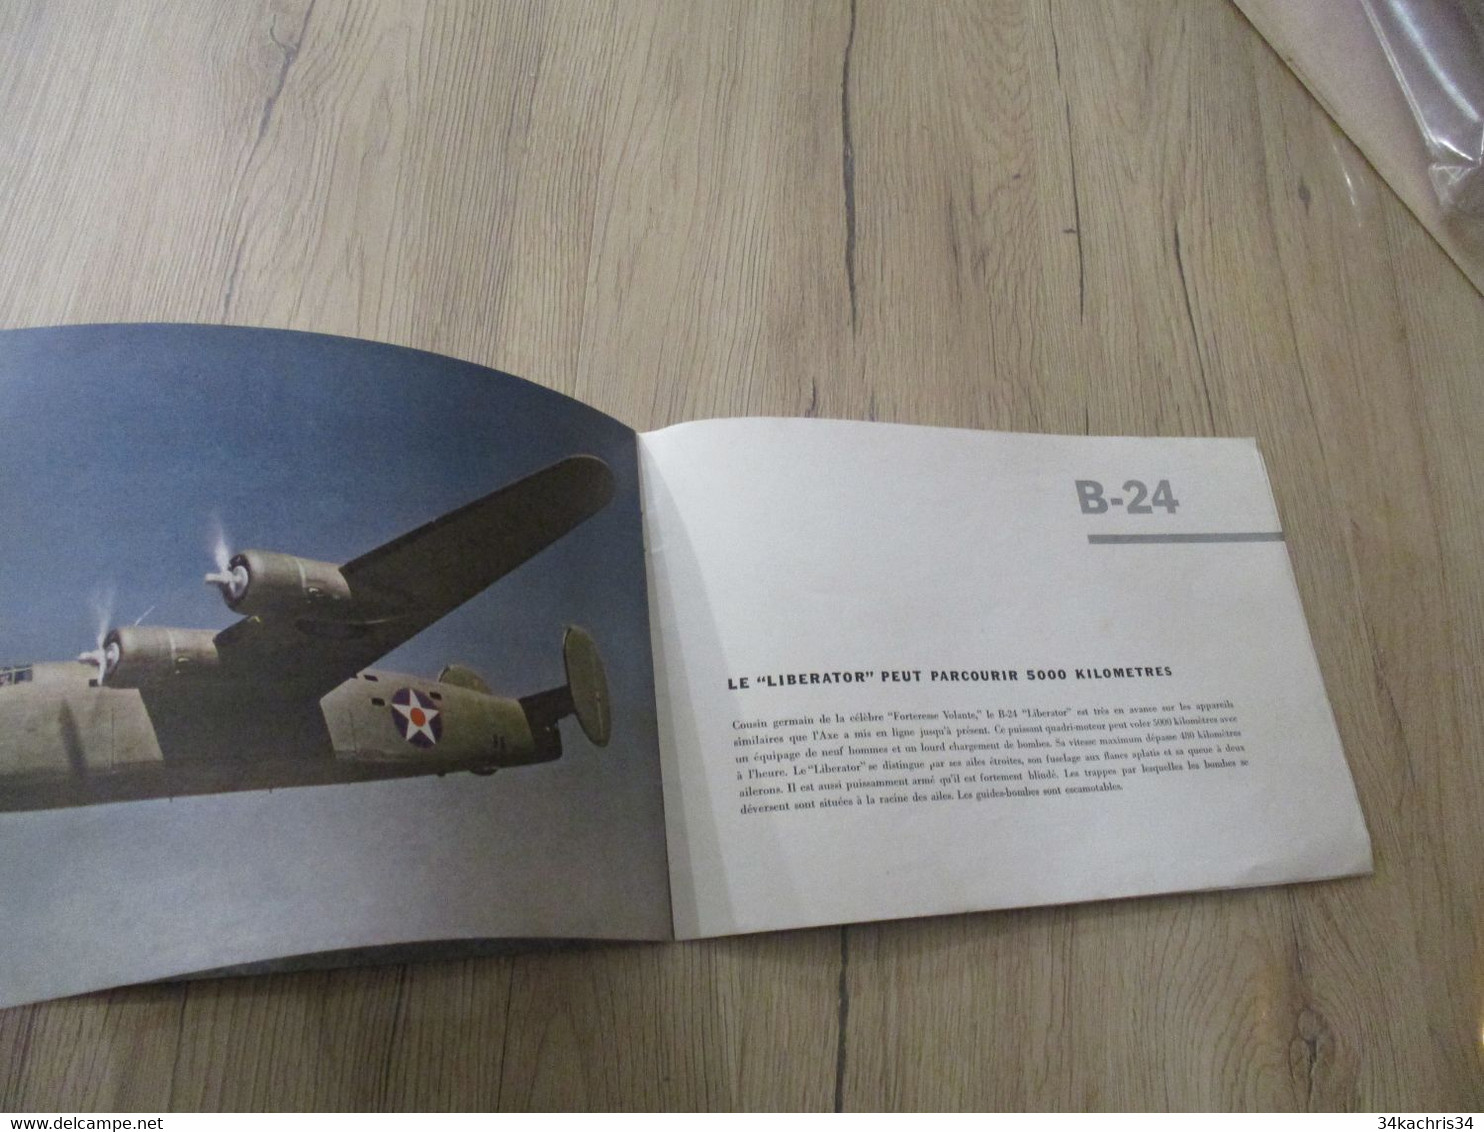 Catalogue Avions anglais fascicule 185 000 avions de guerre  Photos caractéristiques incomplet